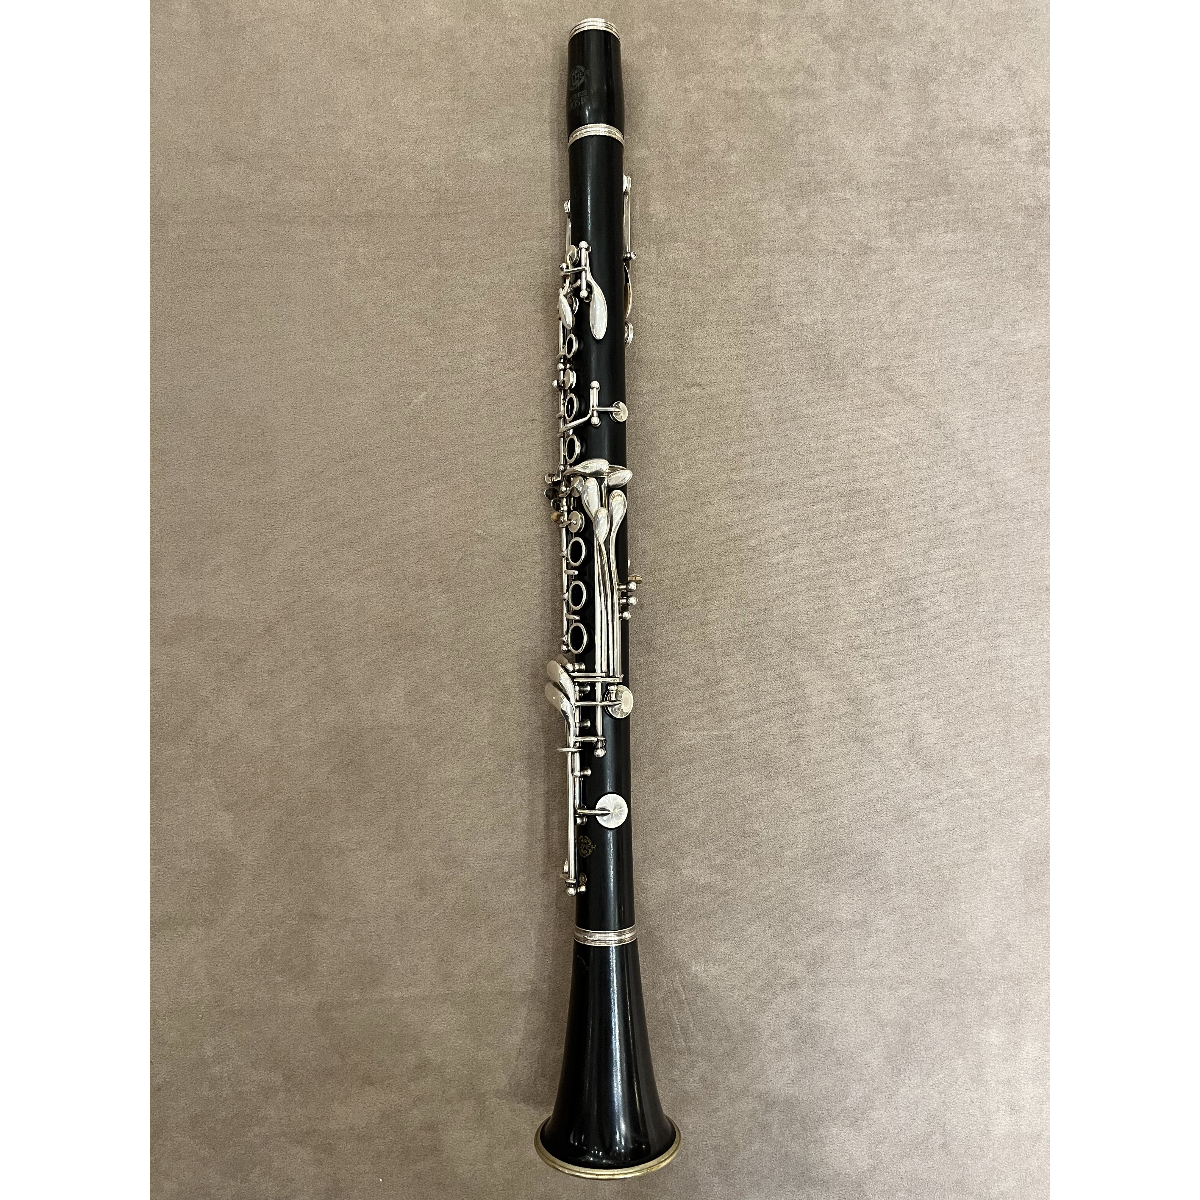 Selmer Series 9 Bb klarinet X8813